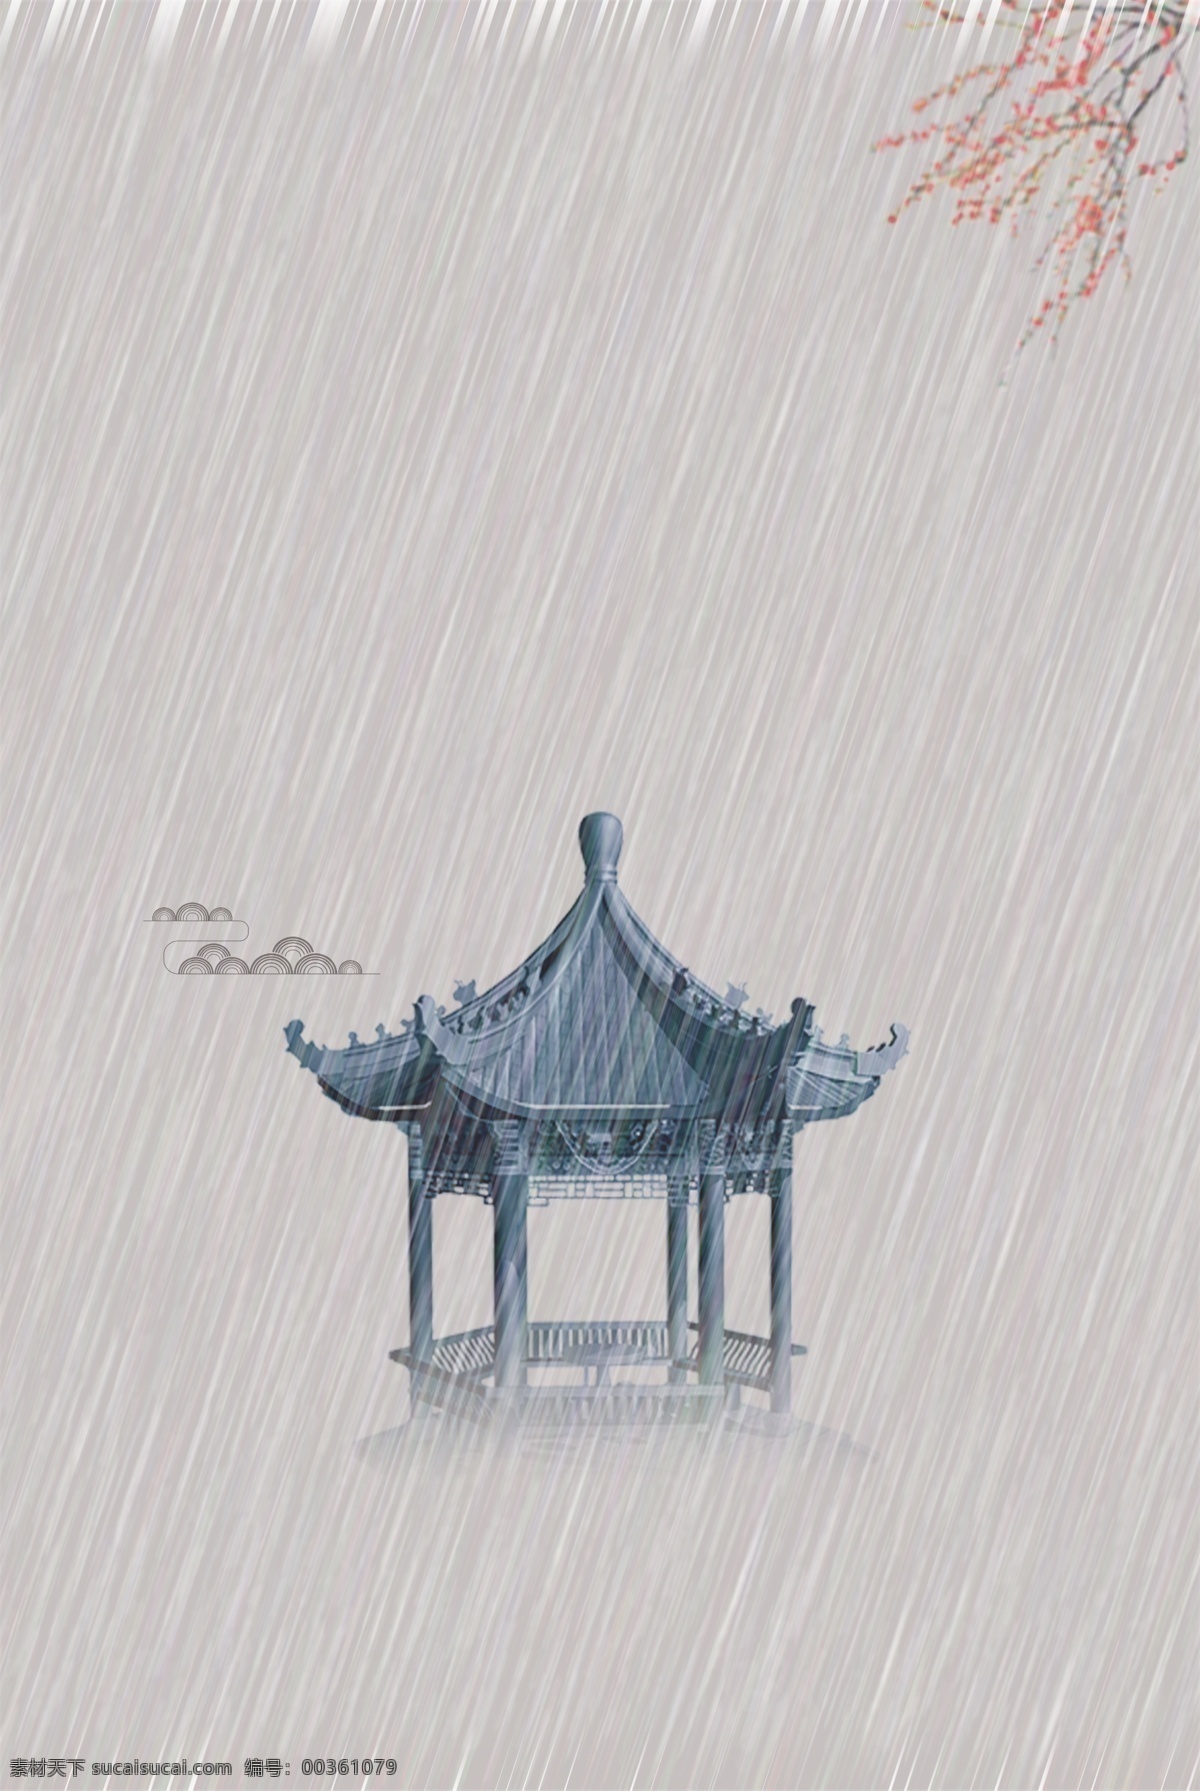 八角亭 凉亭 春雨 下雨 下雨背景卡通 手绘下雨图 素材类 自然景观 自然风光